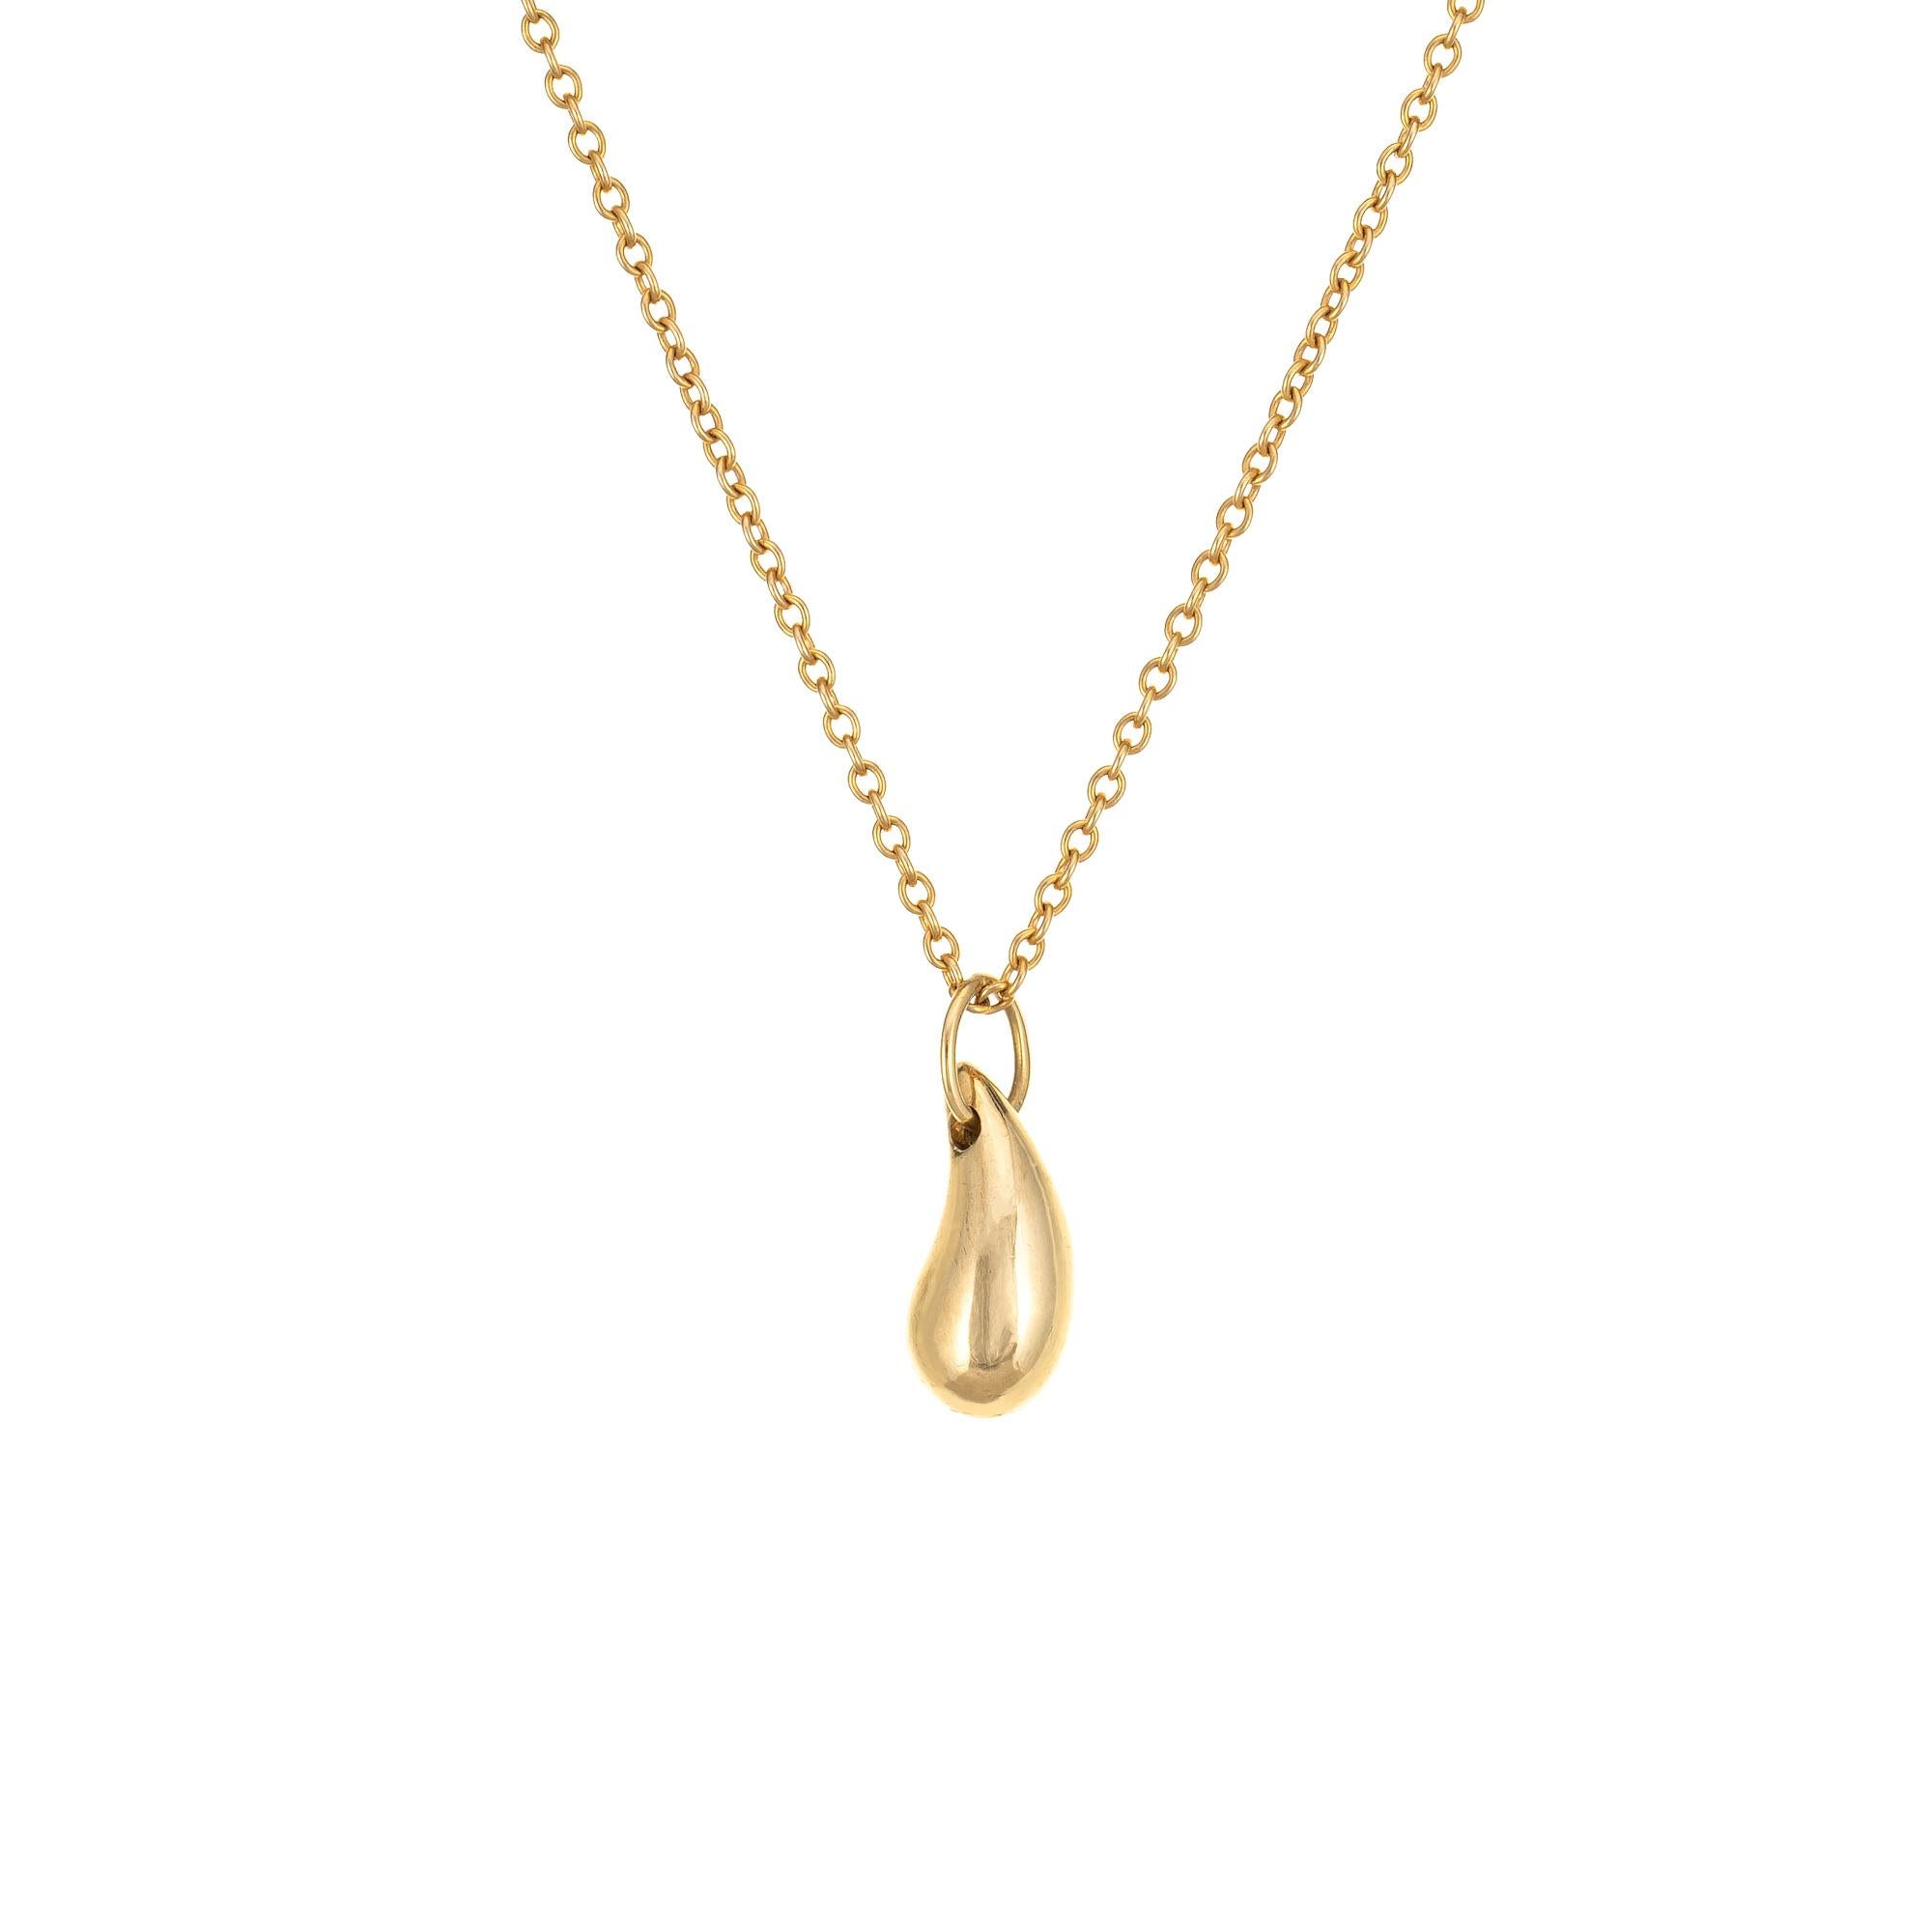 Élégant collier vintage Tiffany & CIRCA en forme de cœur, réalisé en or jaune 18 carats (vers les années 1980).  

La goutte d'eau est un motif classique d'Elsa Peretti. De petite taille, la goutte d'eau est conçue pour ressembler à une goutte de